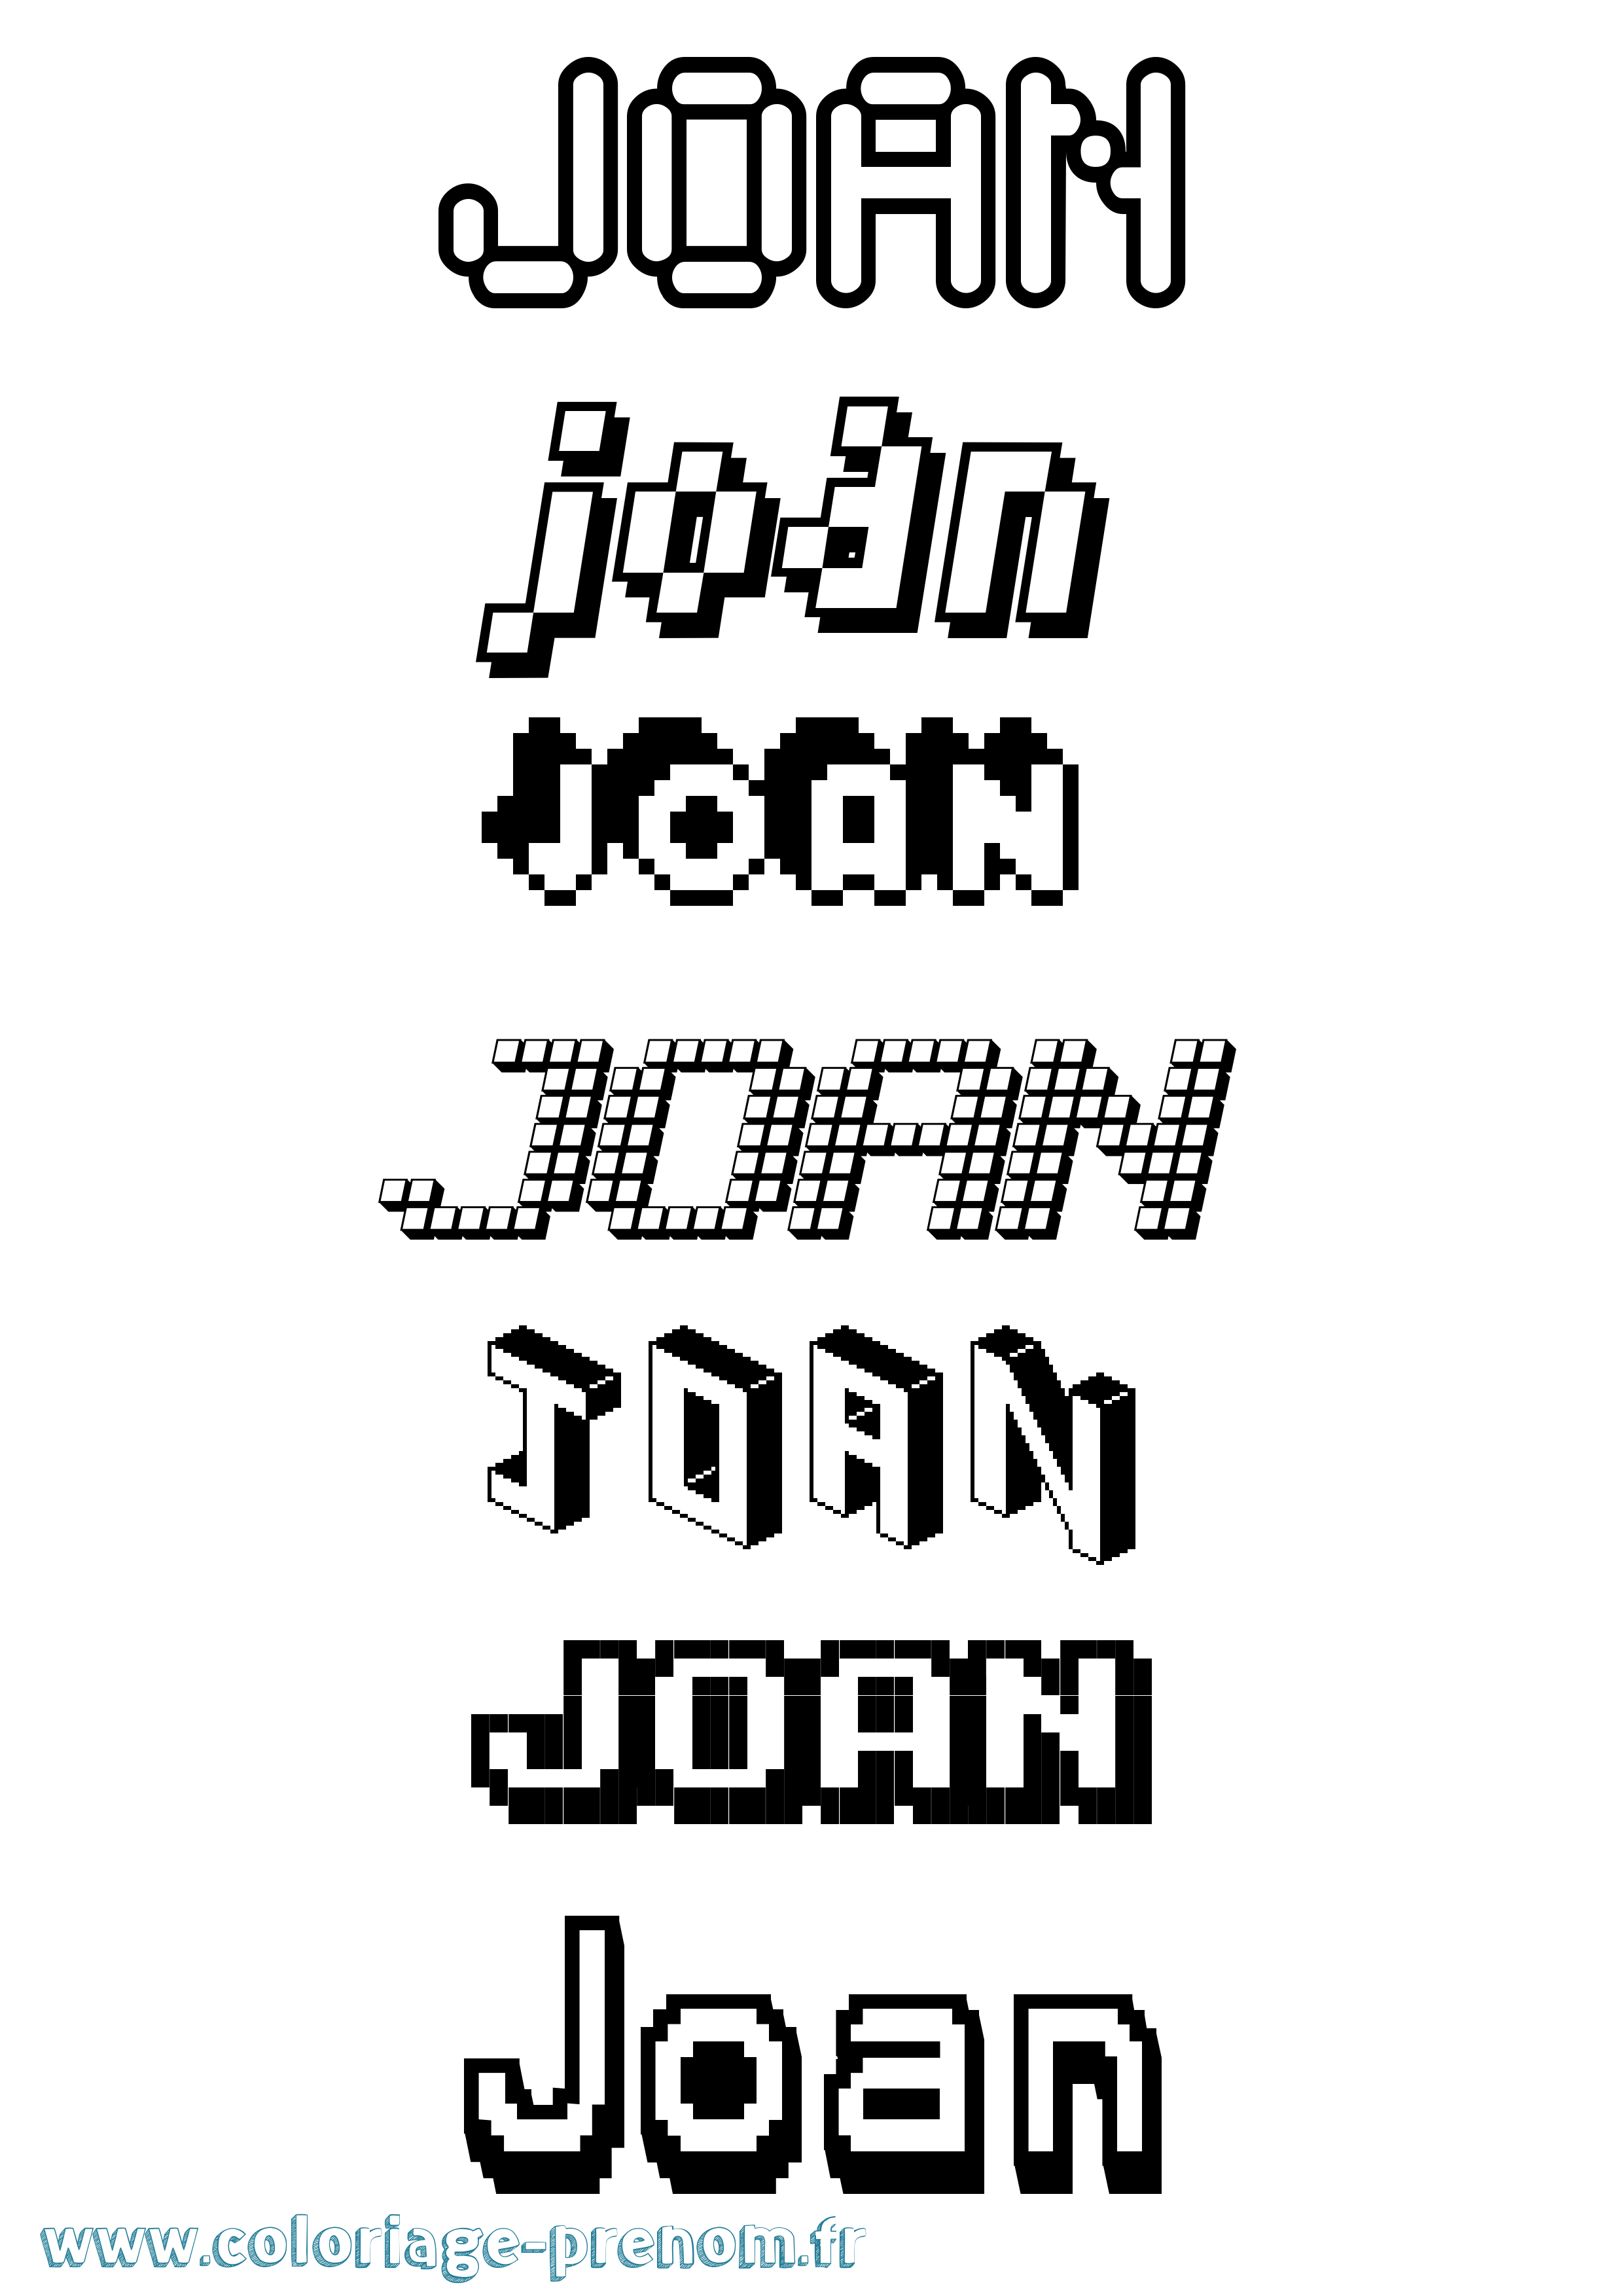 Coloriage prénom Joan Pixel